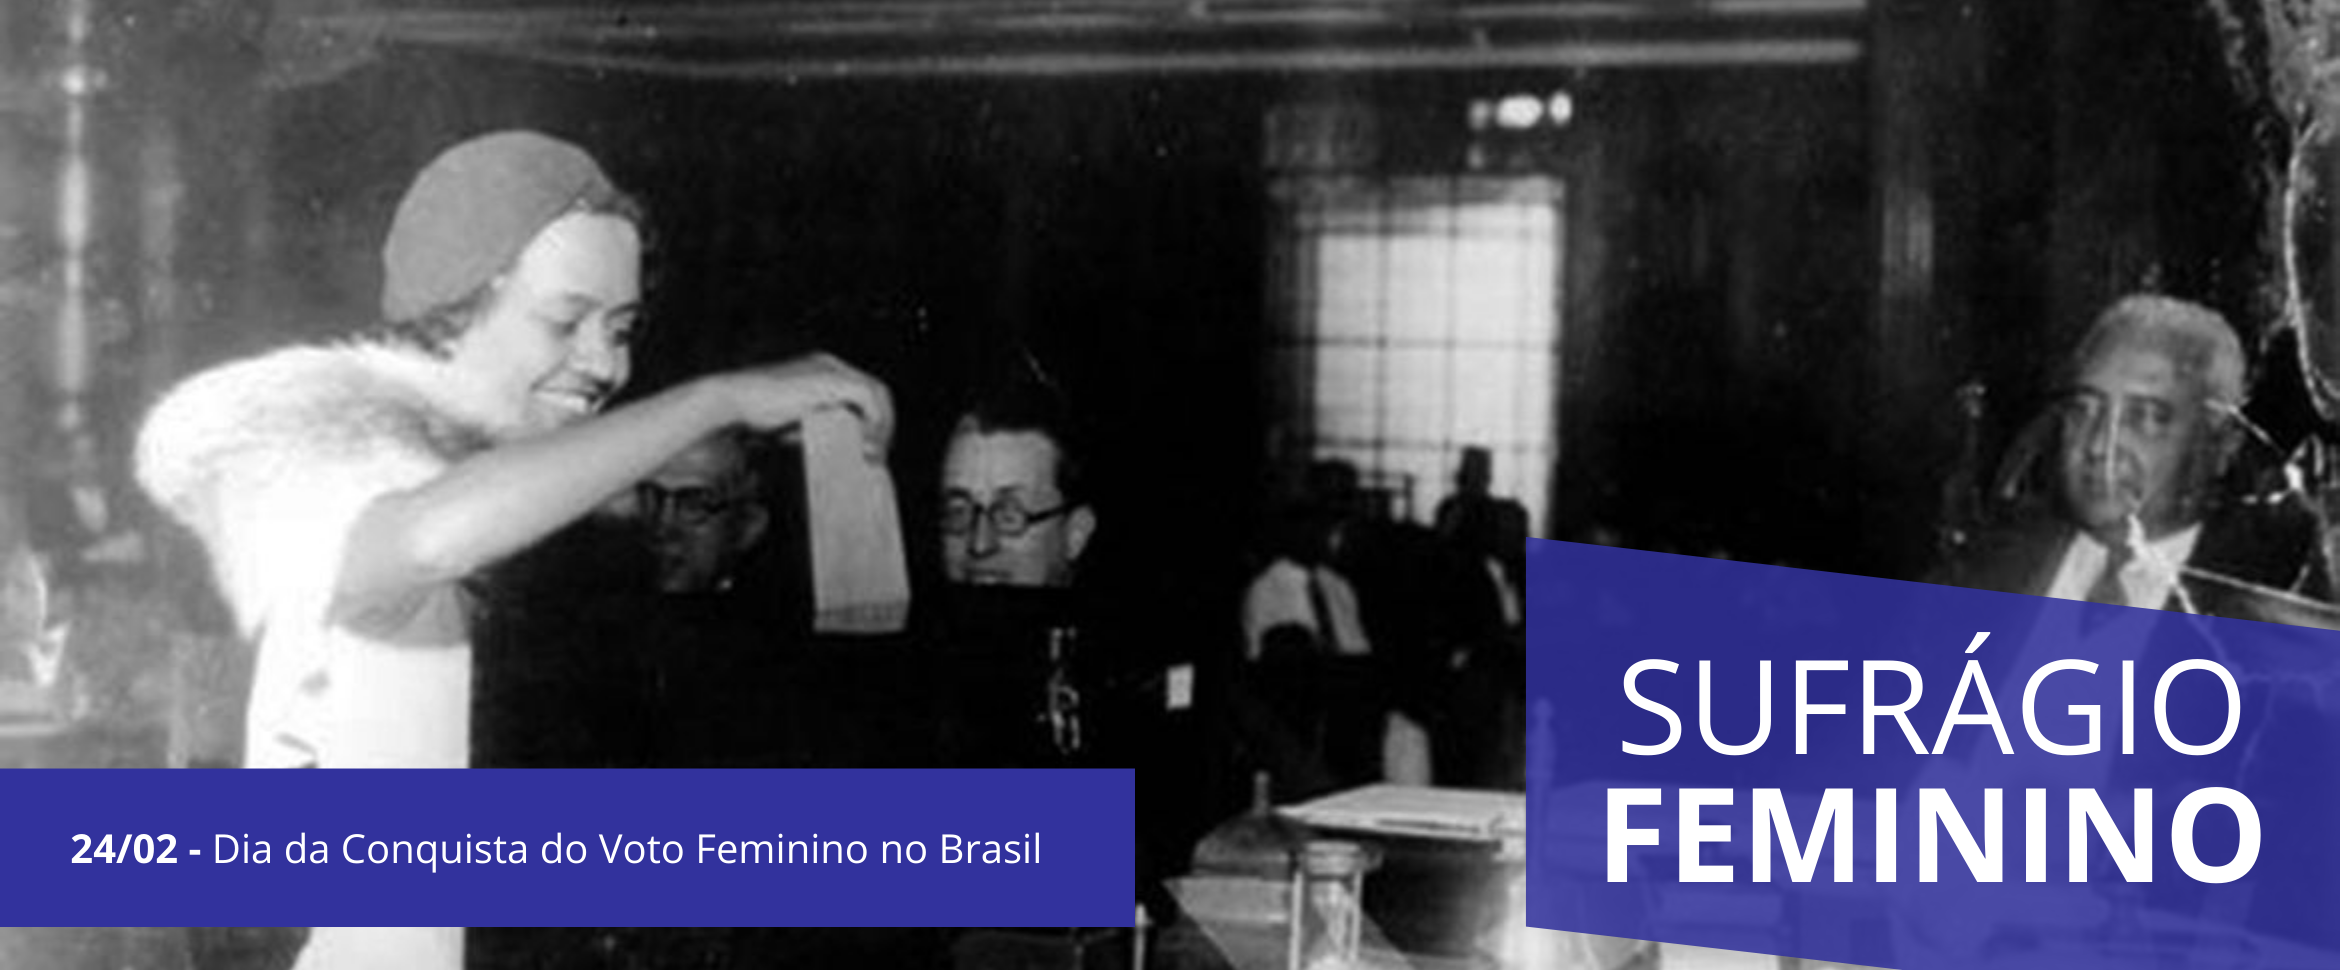 24 - Dia da Conquista do Voto Feminino no Brasil